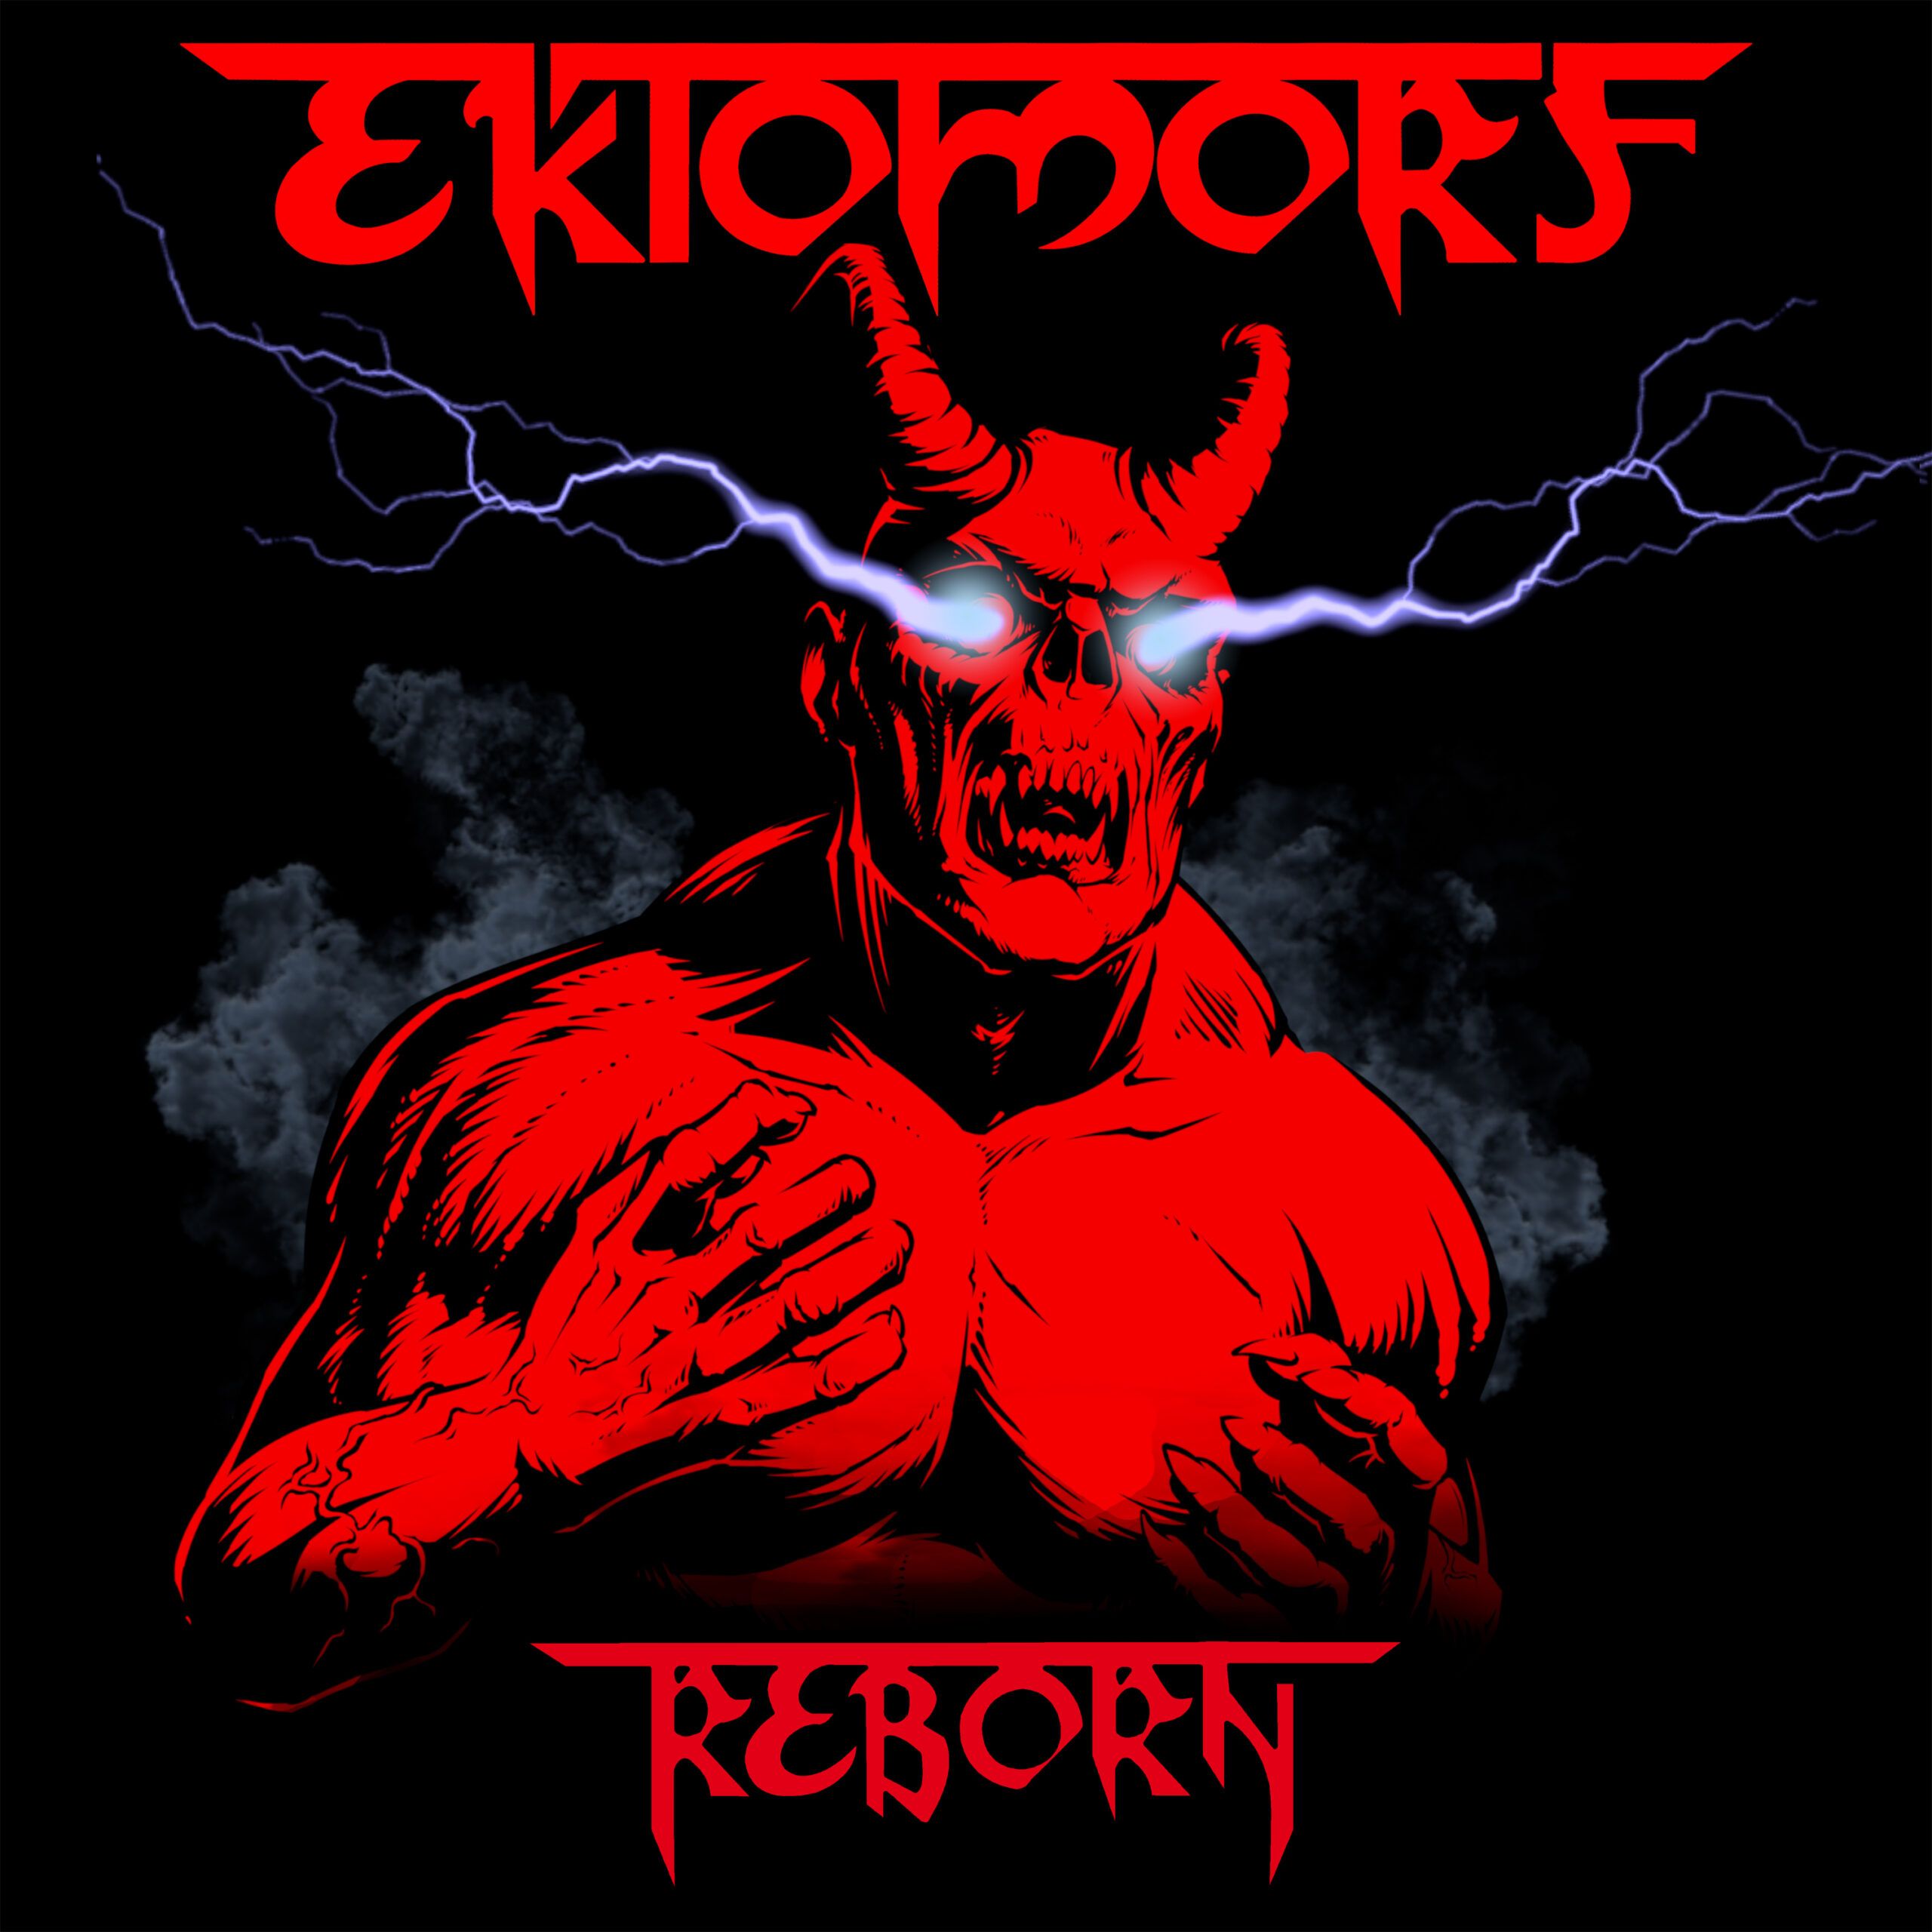 Titeltrack-Video zum kommenden "Reborn"-Album enthüllt